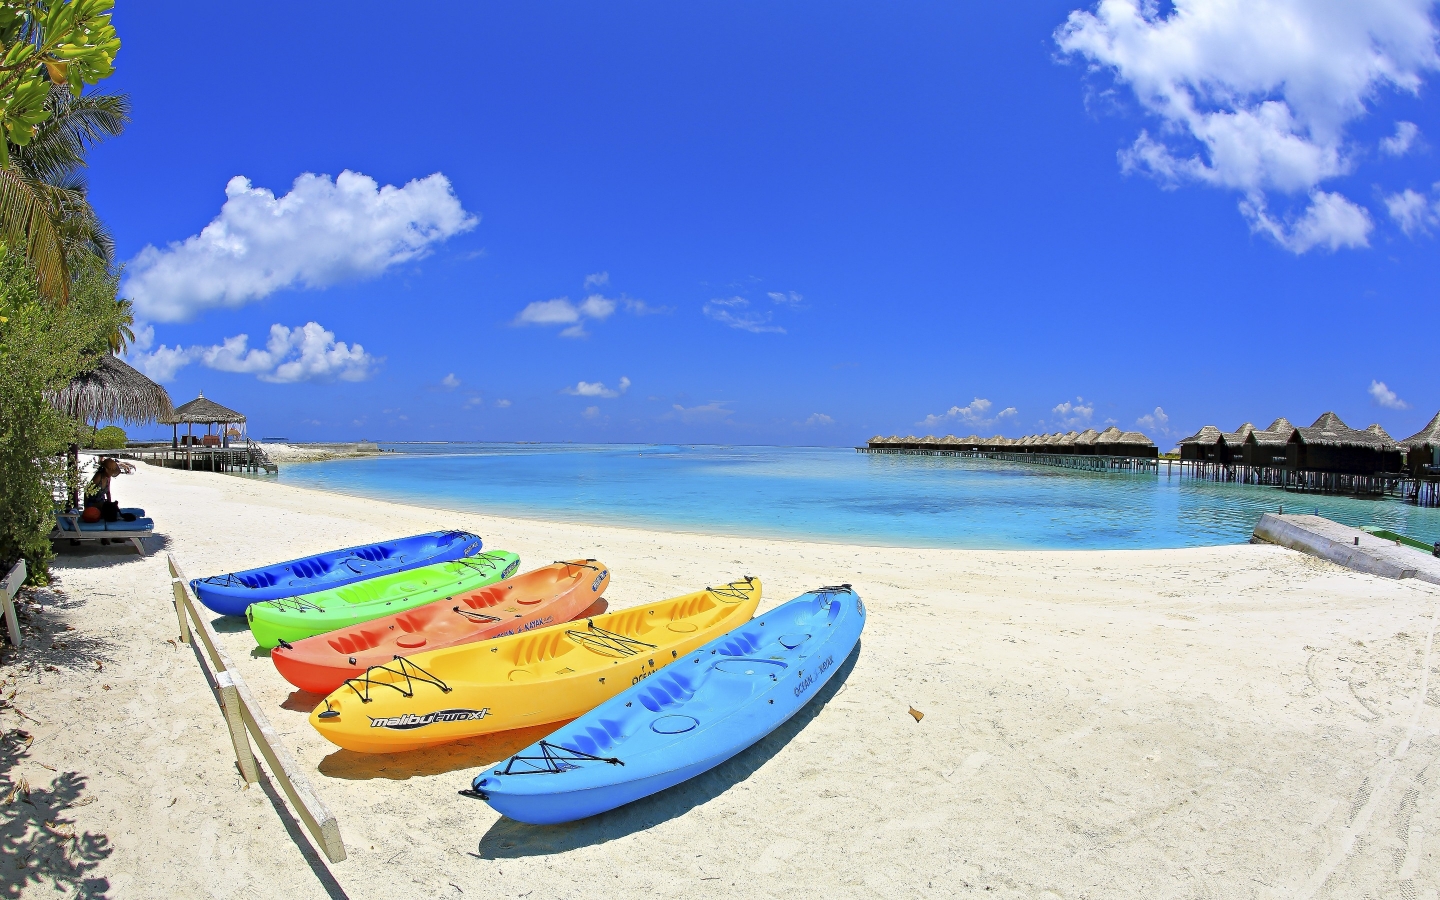 Maldives Beach Corner for 1440 x 900 widescreen resolution